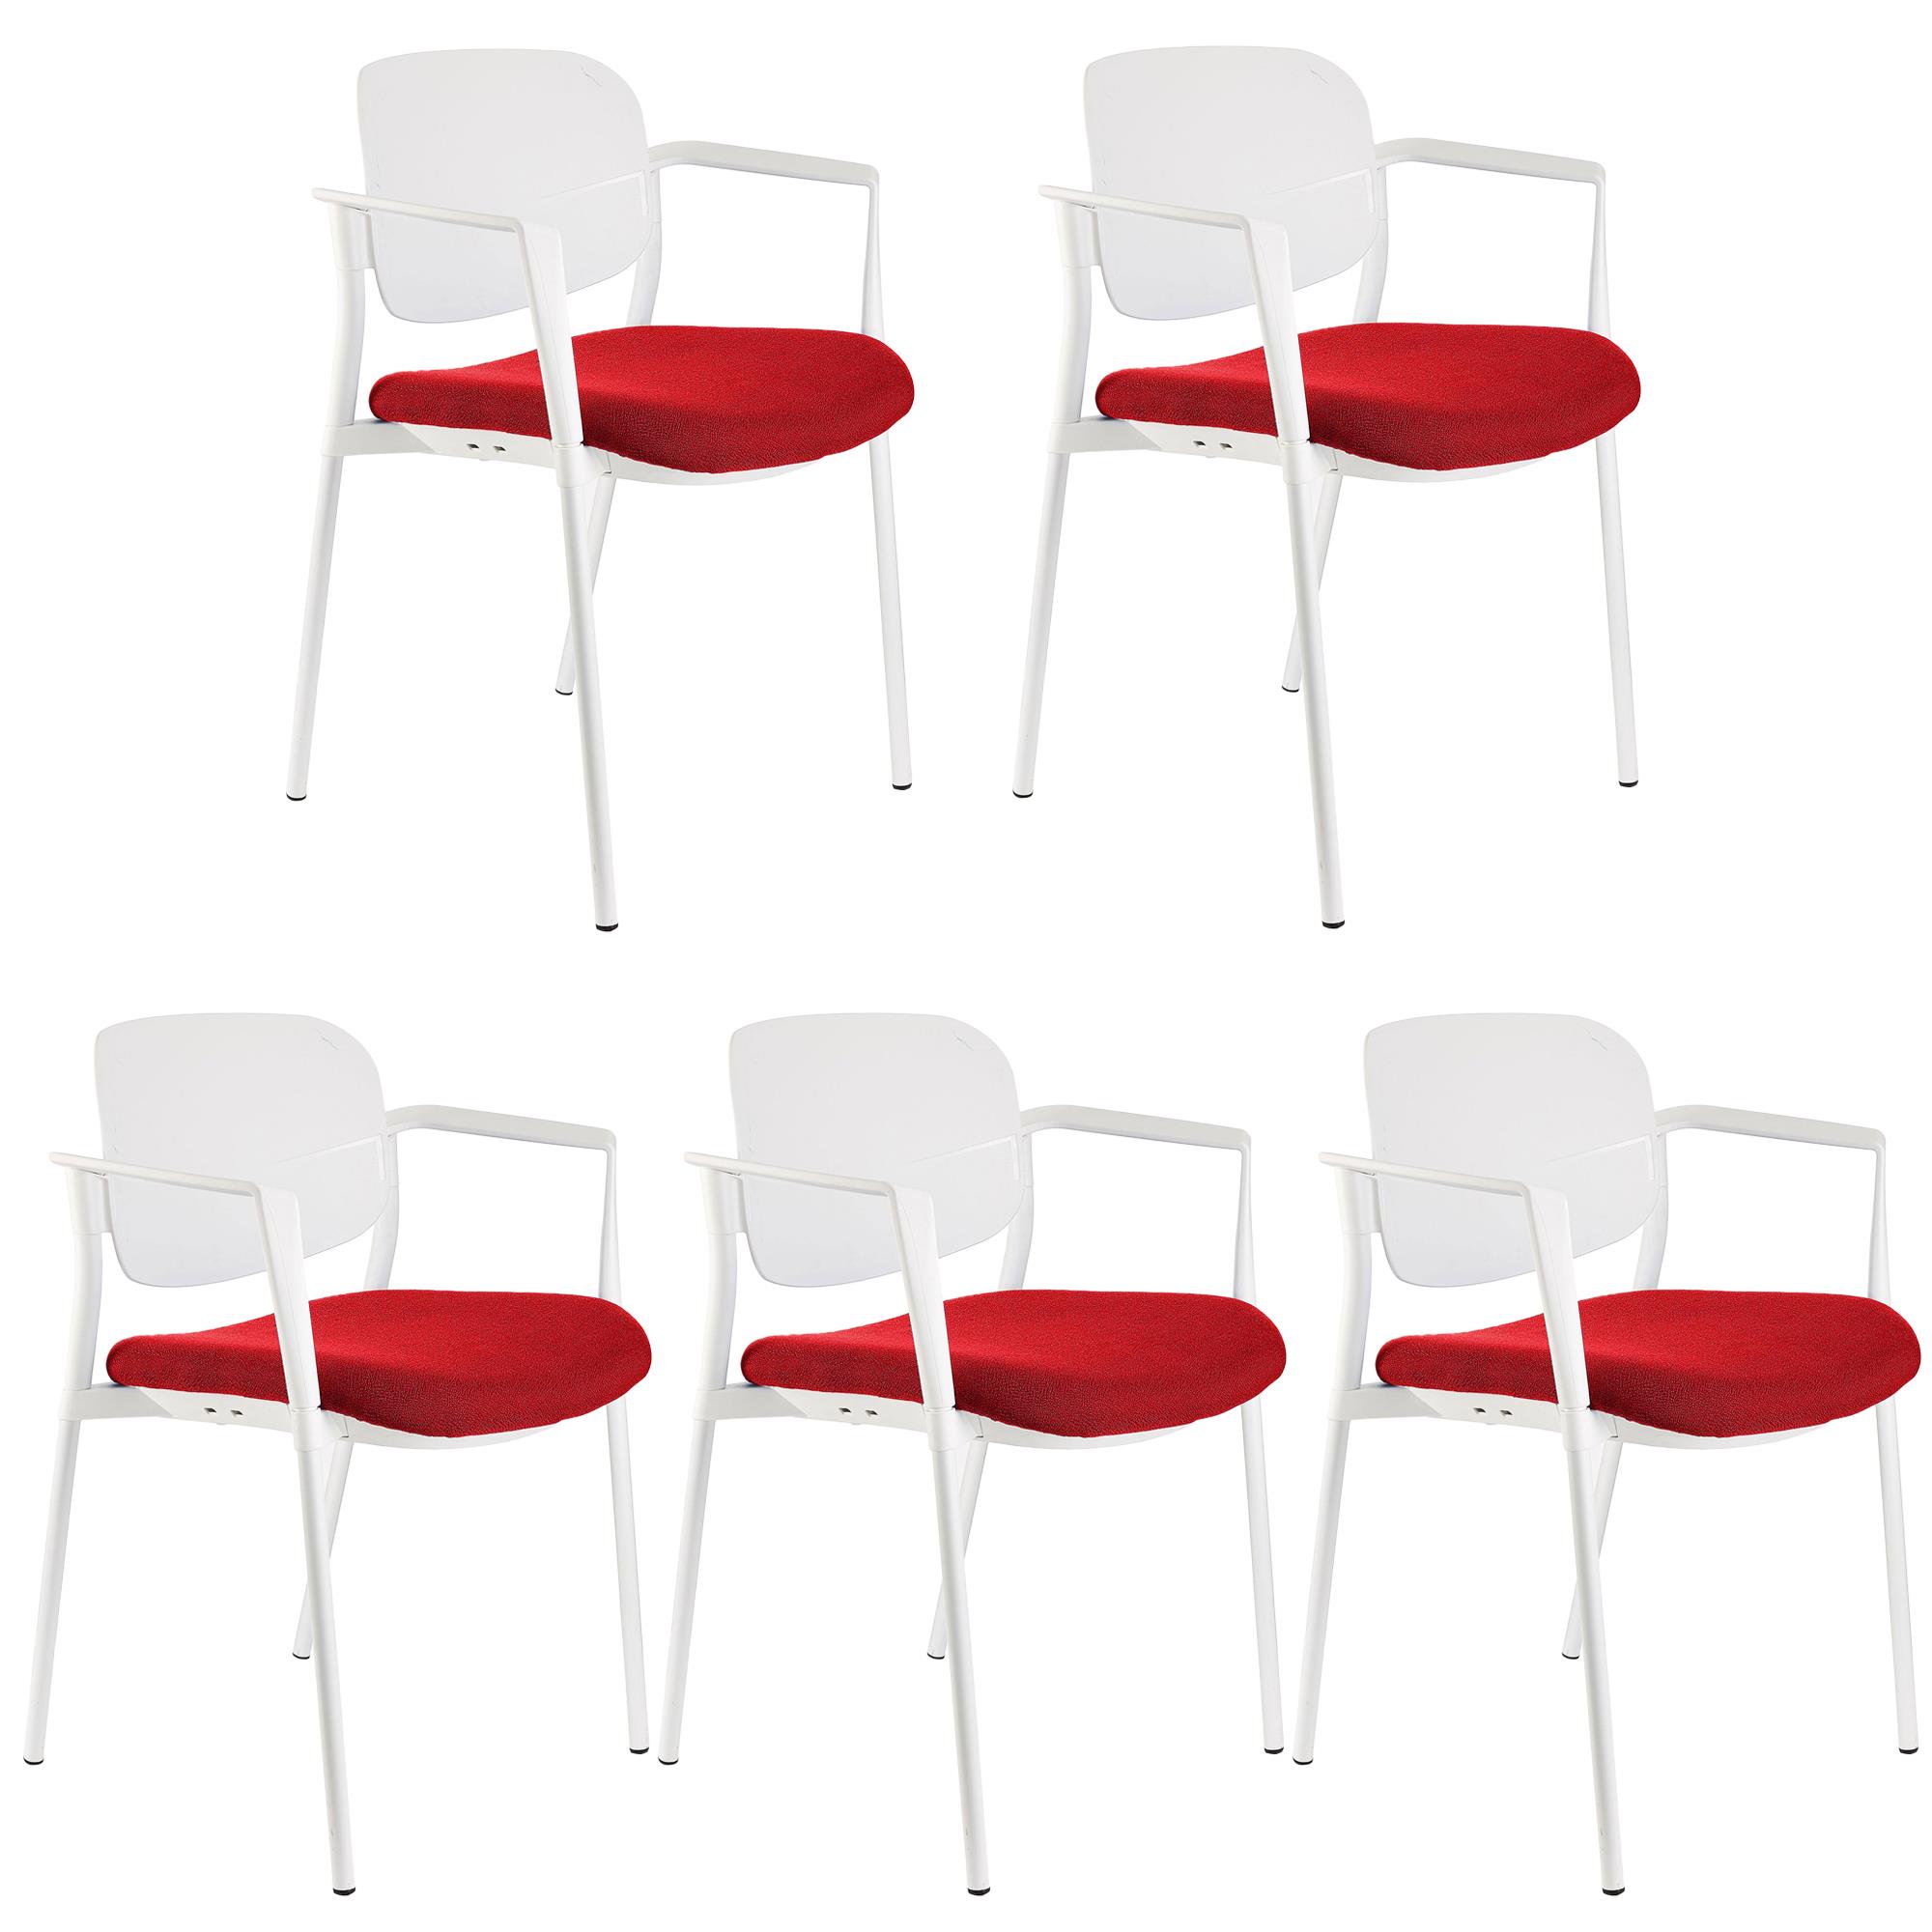 Lote de 5 sillas de Confidente ERIC, Cómodas y Prácticas, Apilables, Color Rojo